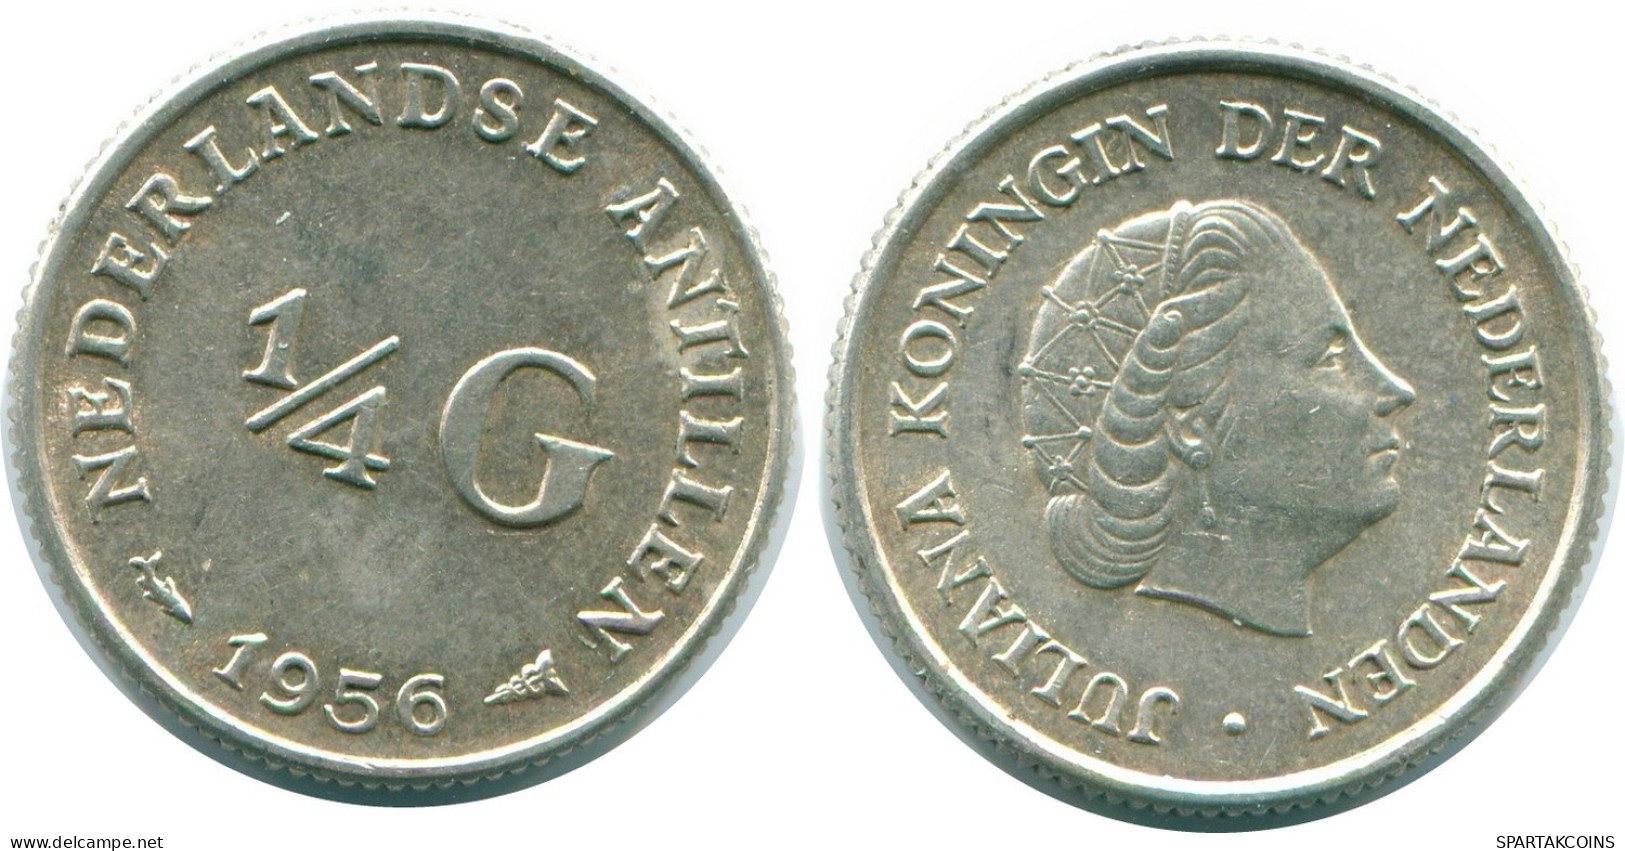 1/4 GULDEN 1956 NIEDERLÄNDISCHE ANTILLEN SILBER Koloniale Münze #NL10924.4.D.A - Antille Olandesi